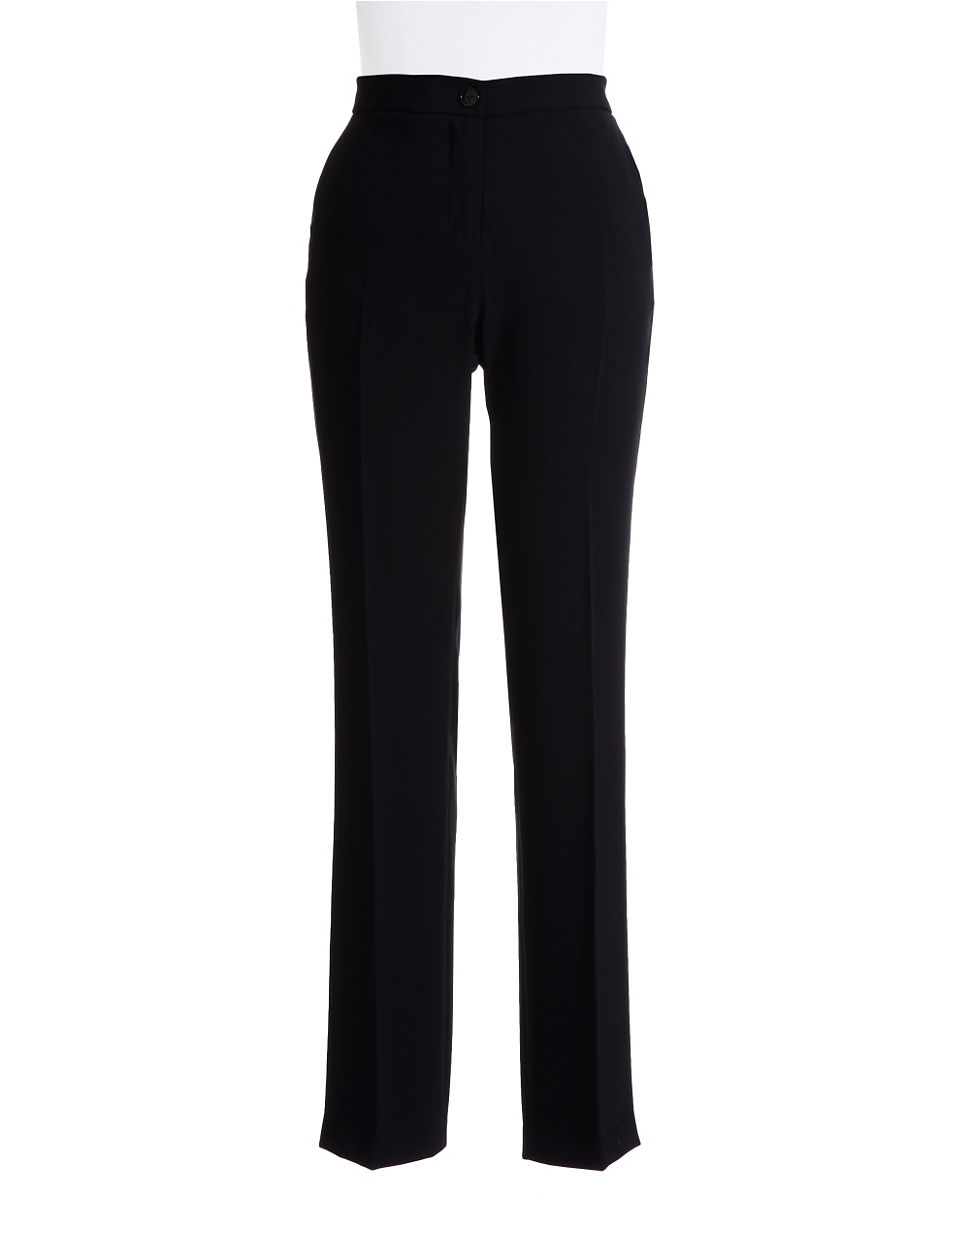 Ivanka trump Slim Fit Dress Pants in Black | Lyst